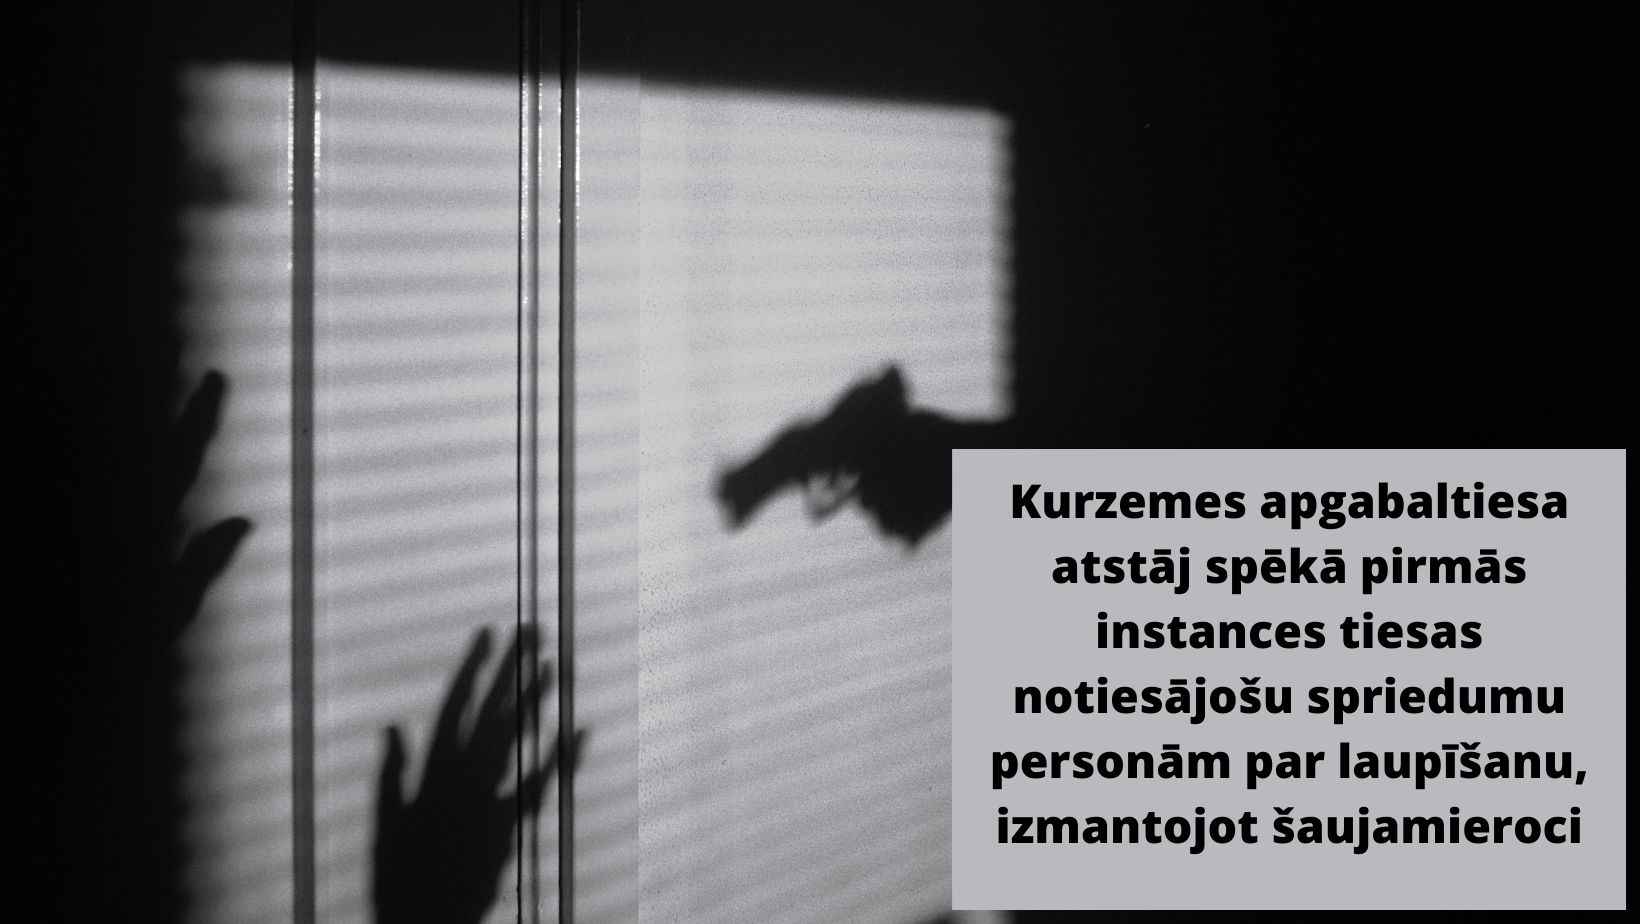 Attēls: Kurzemes apgabaltiesa atstāj spēkā pirmās instances tiesas notiesājošu spriedumu personām par laupīšanu, izmantojot šaujamieroci